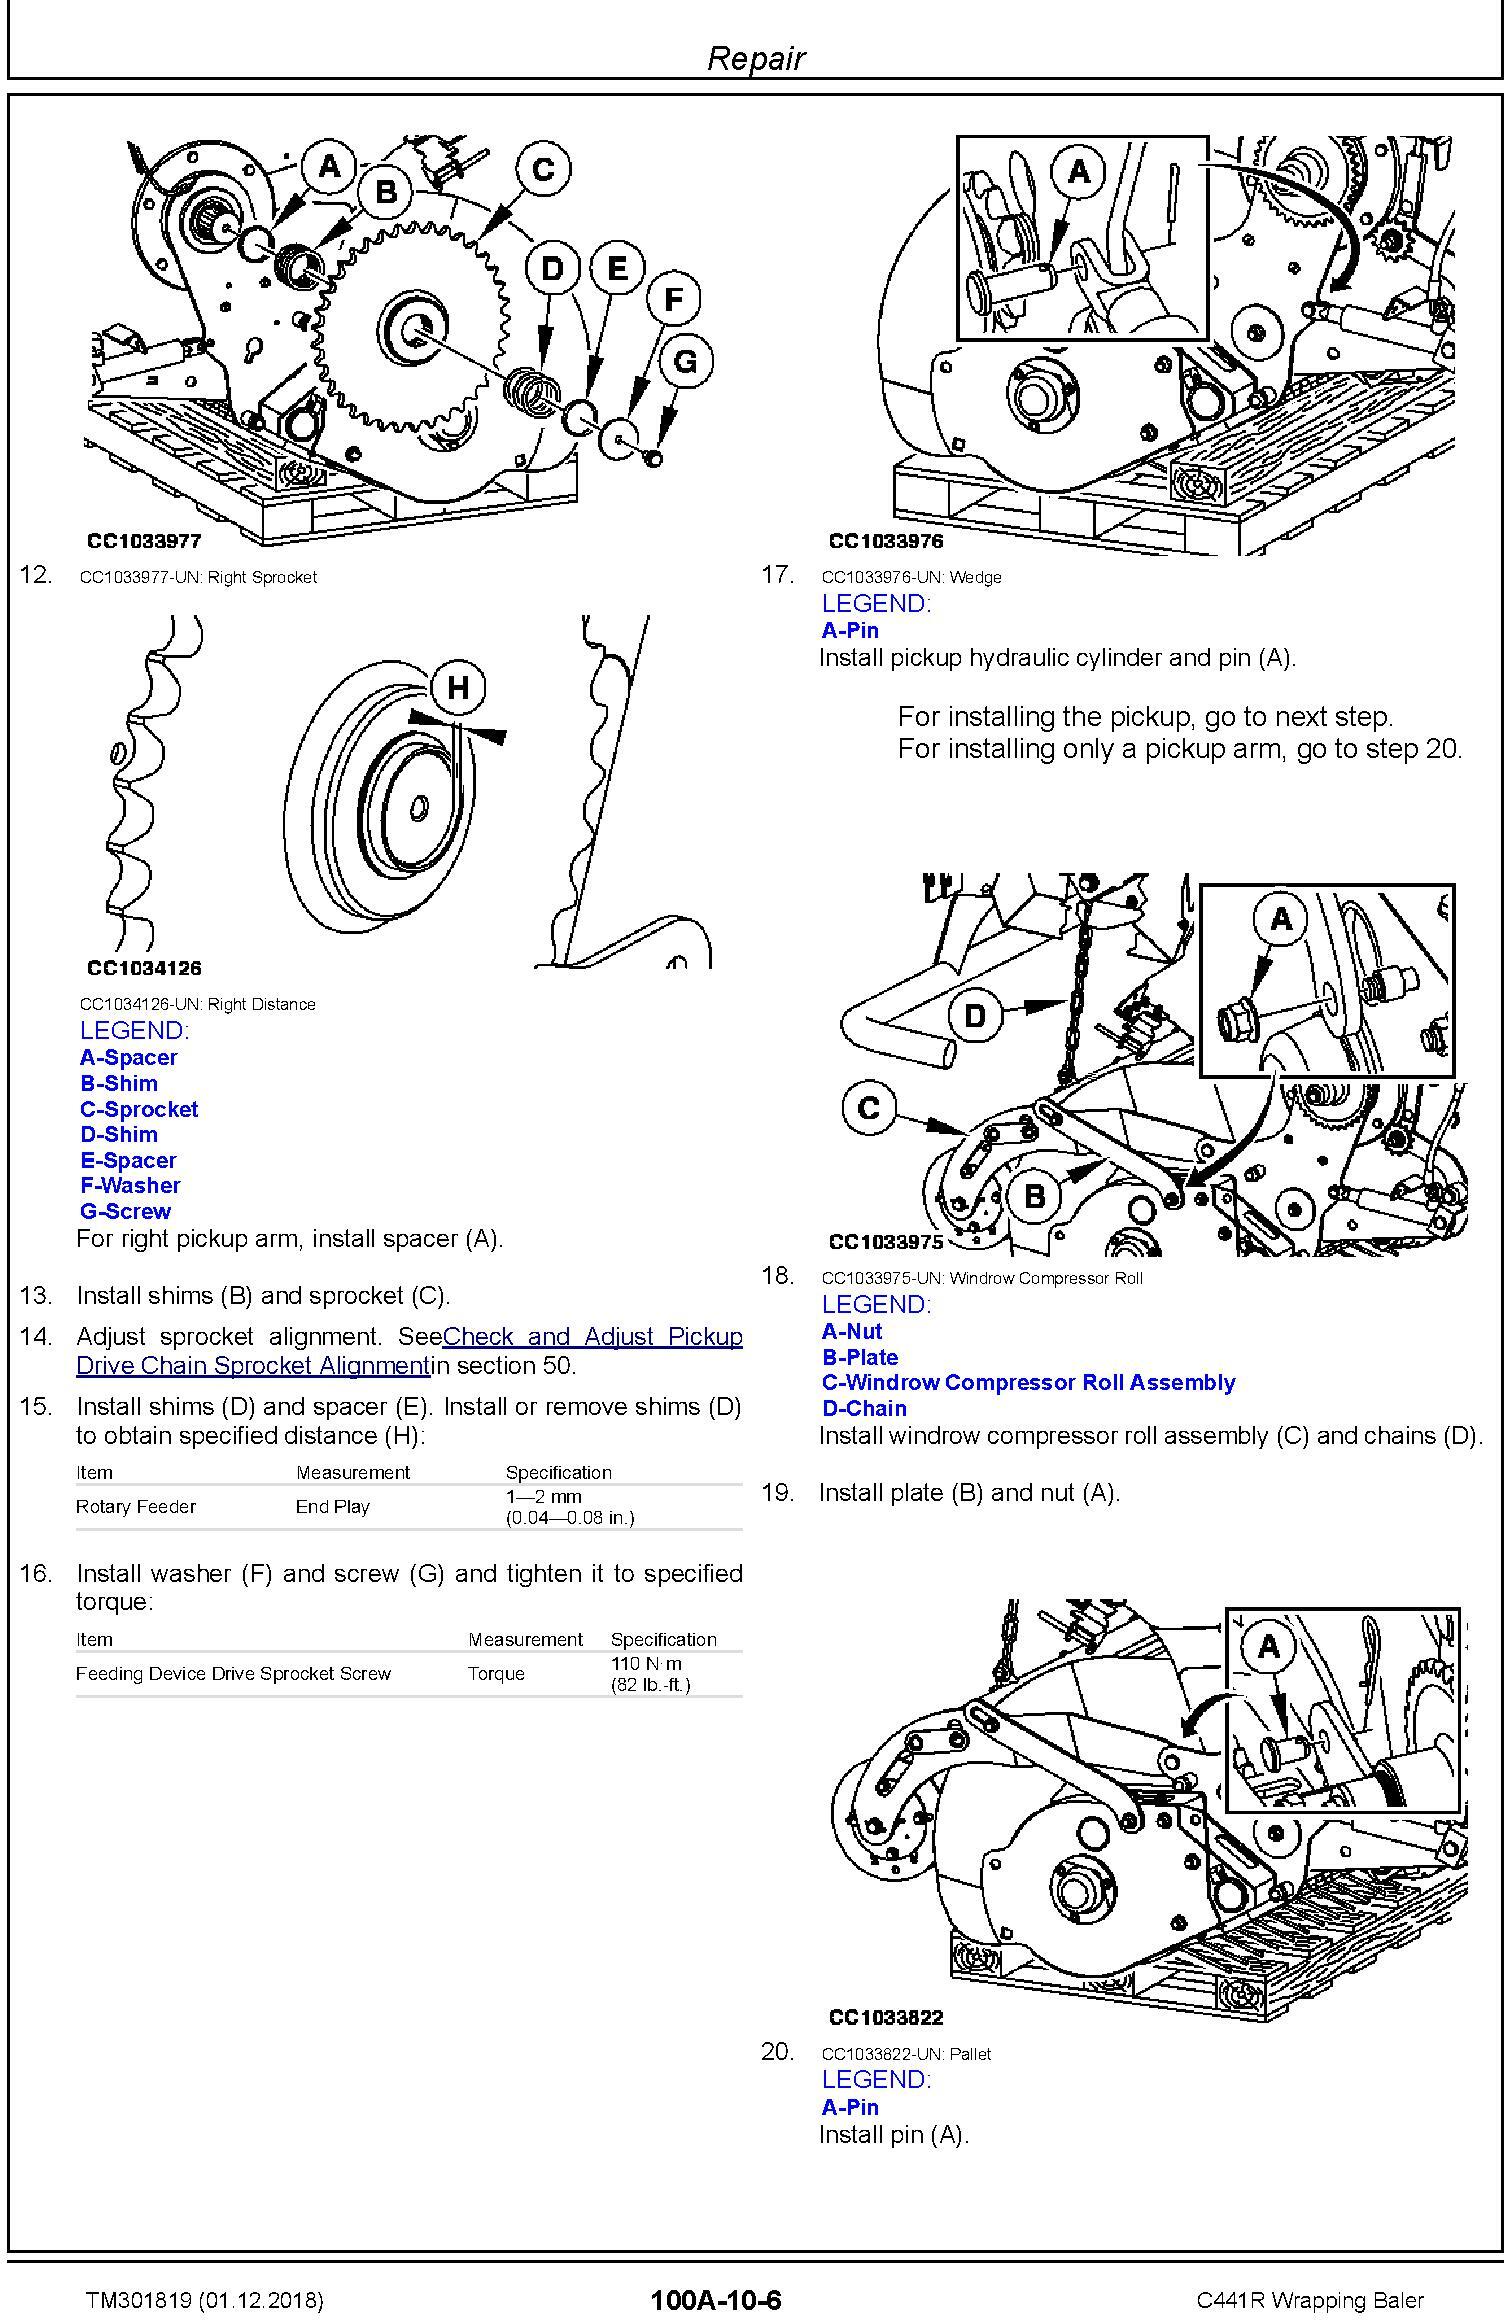 John Deere C441R Wrapping Baler Service Repair Technical Manual (TM301819) - 1